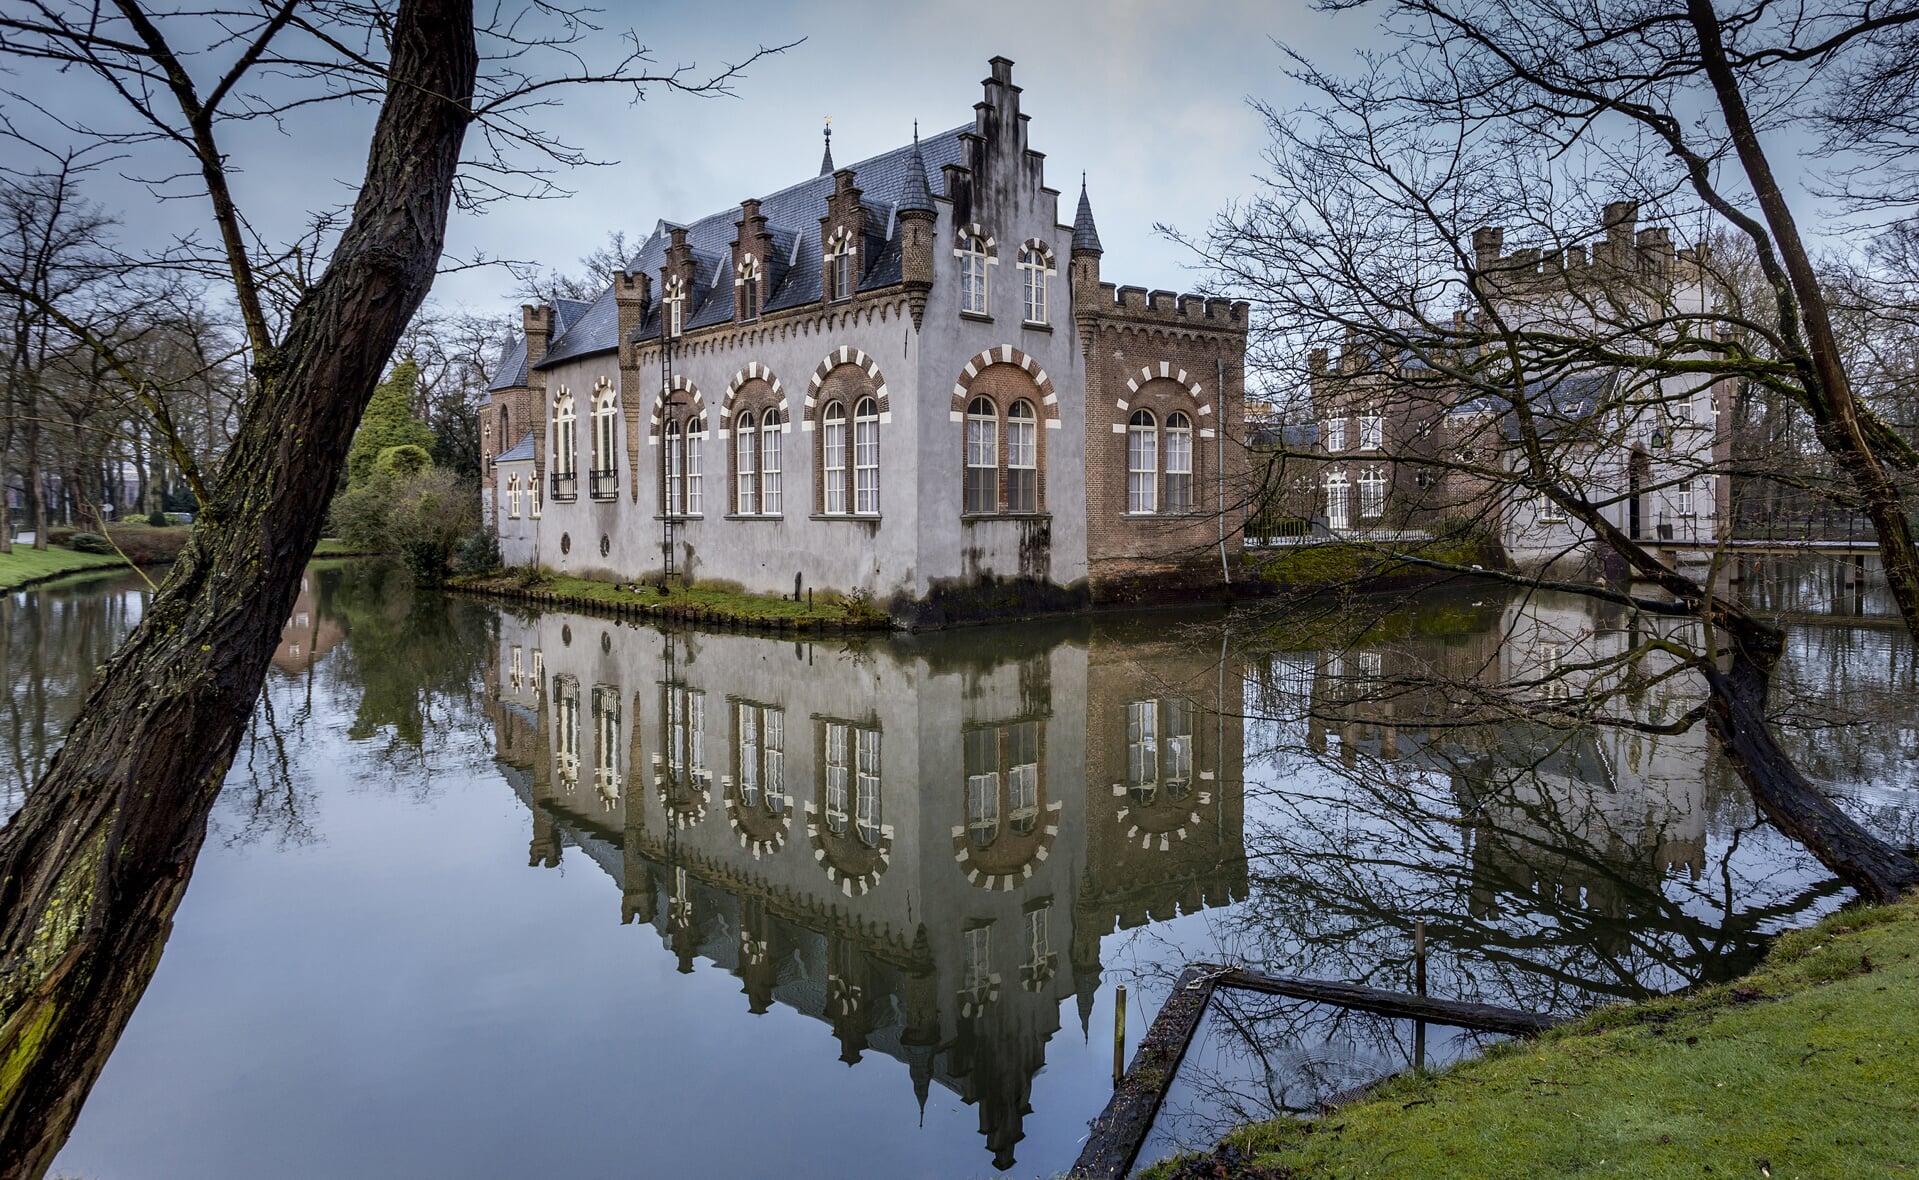 Overnachten in kasteel Stapelen behoort tot de mogelijkheden als de B&B er komt. (Foto: Peter de Koning).